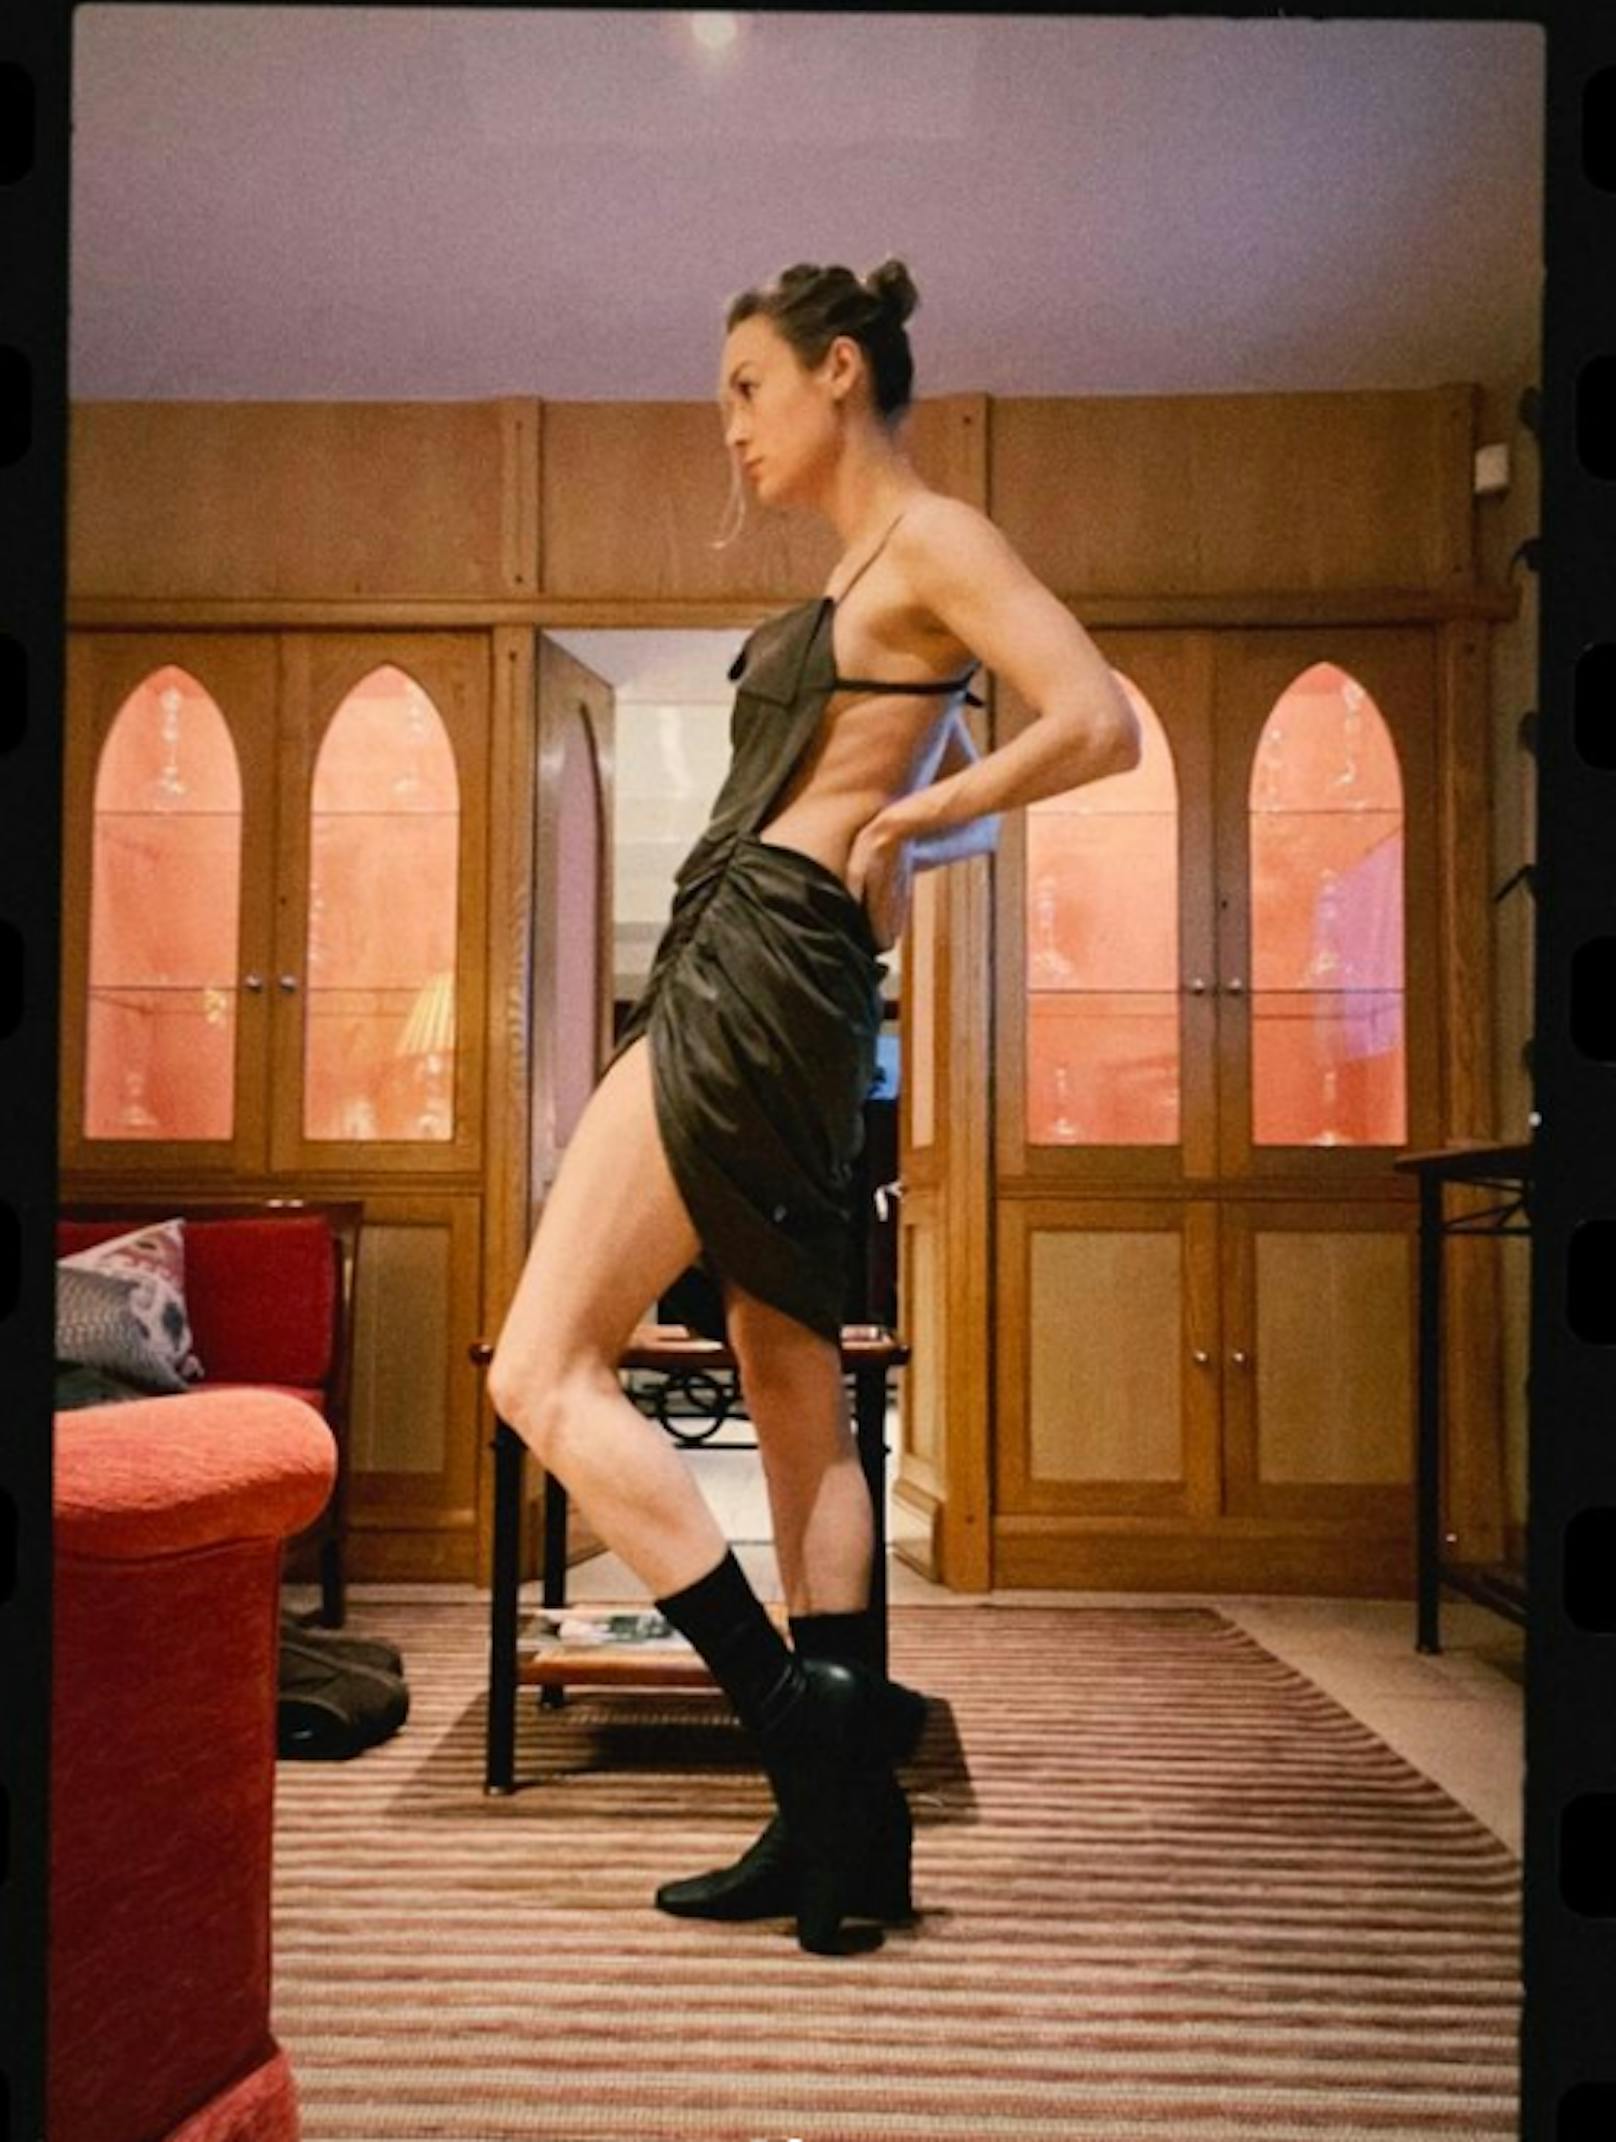 Filmstar Brie Larson zeigt auf Instagram ihre Muskeln. Ihre Fans sind begeistert.